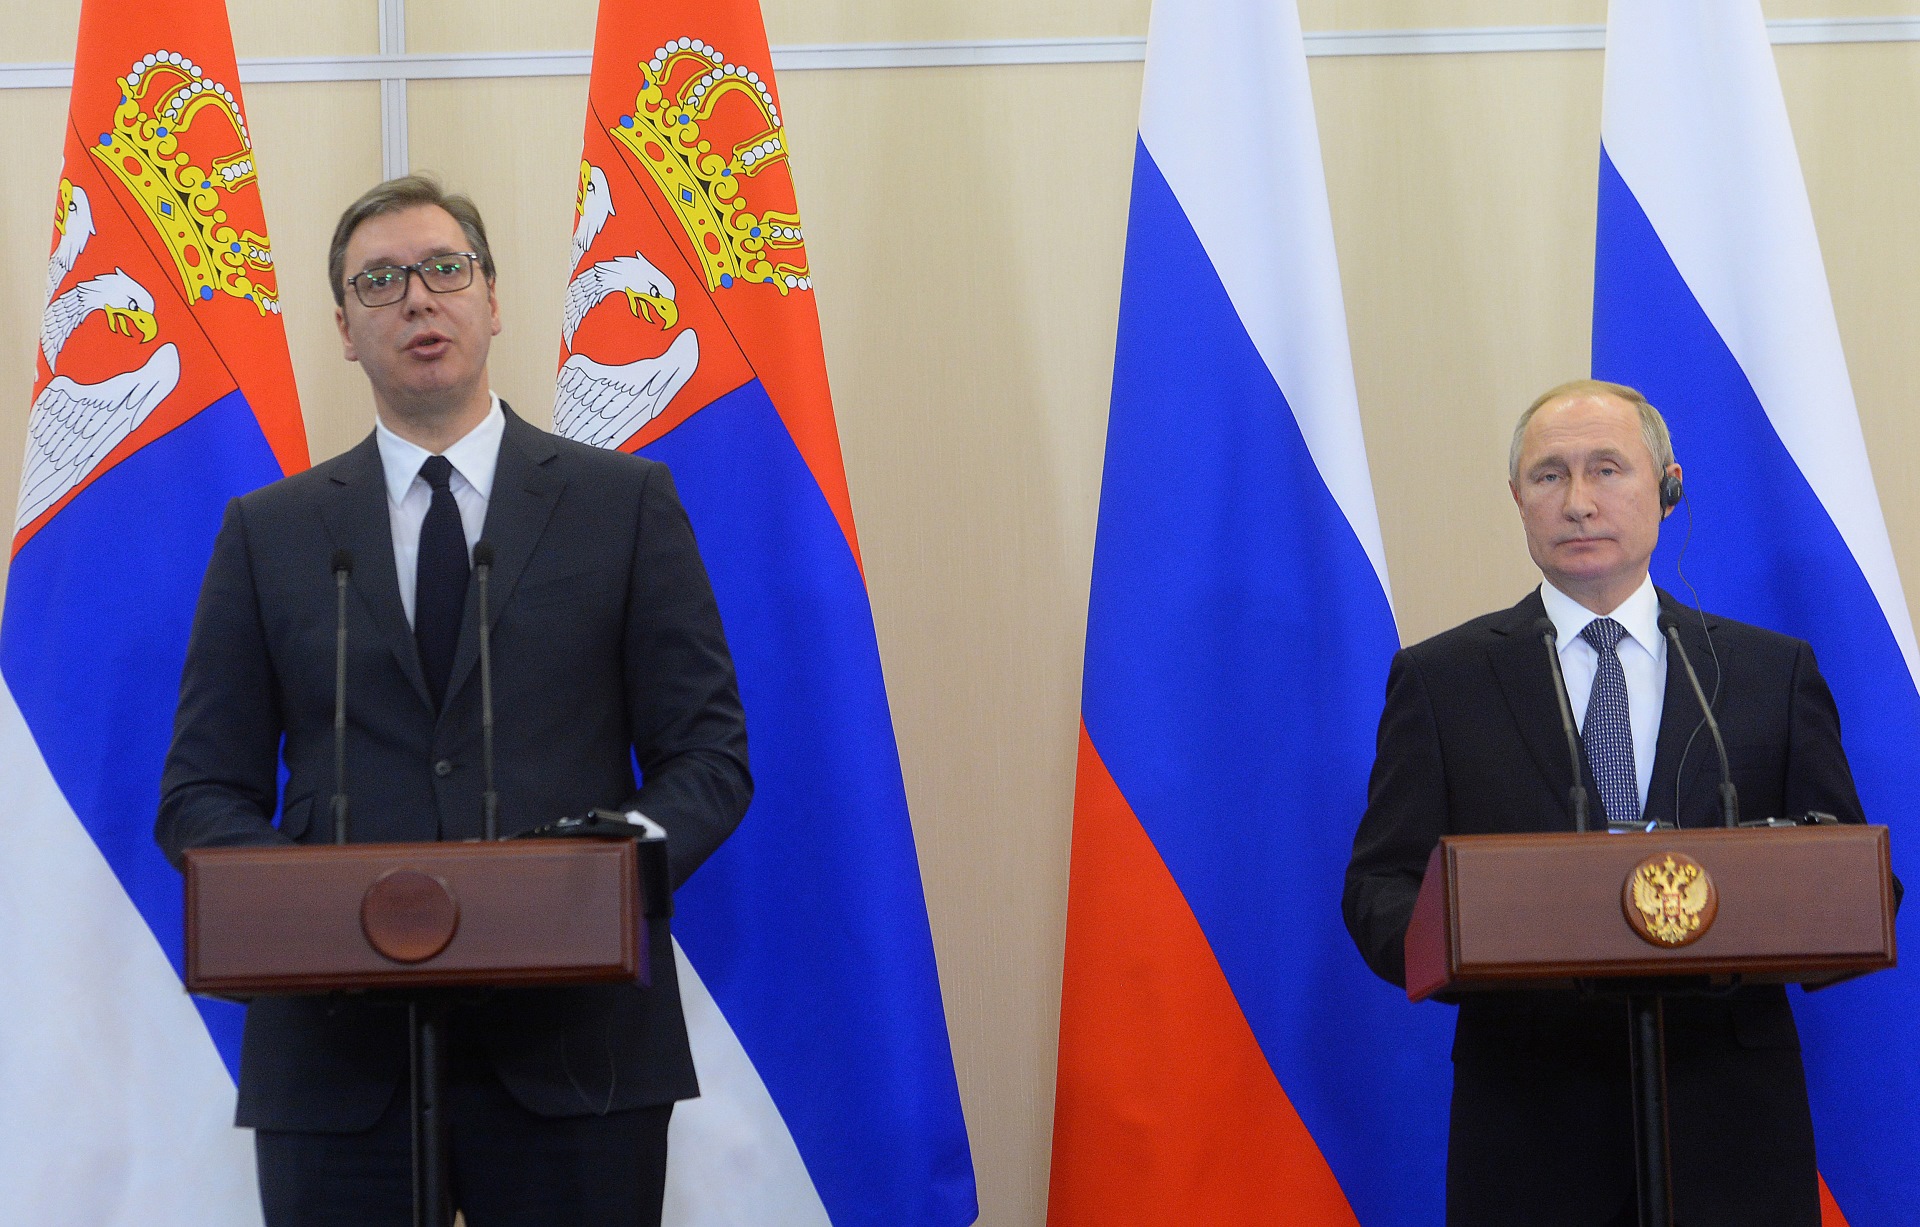 Vucic i Putin - zajednicka pres konferencija u Sociju 04.12.2019. godine